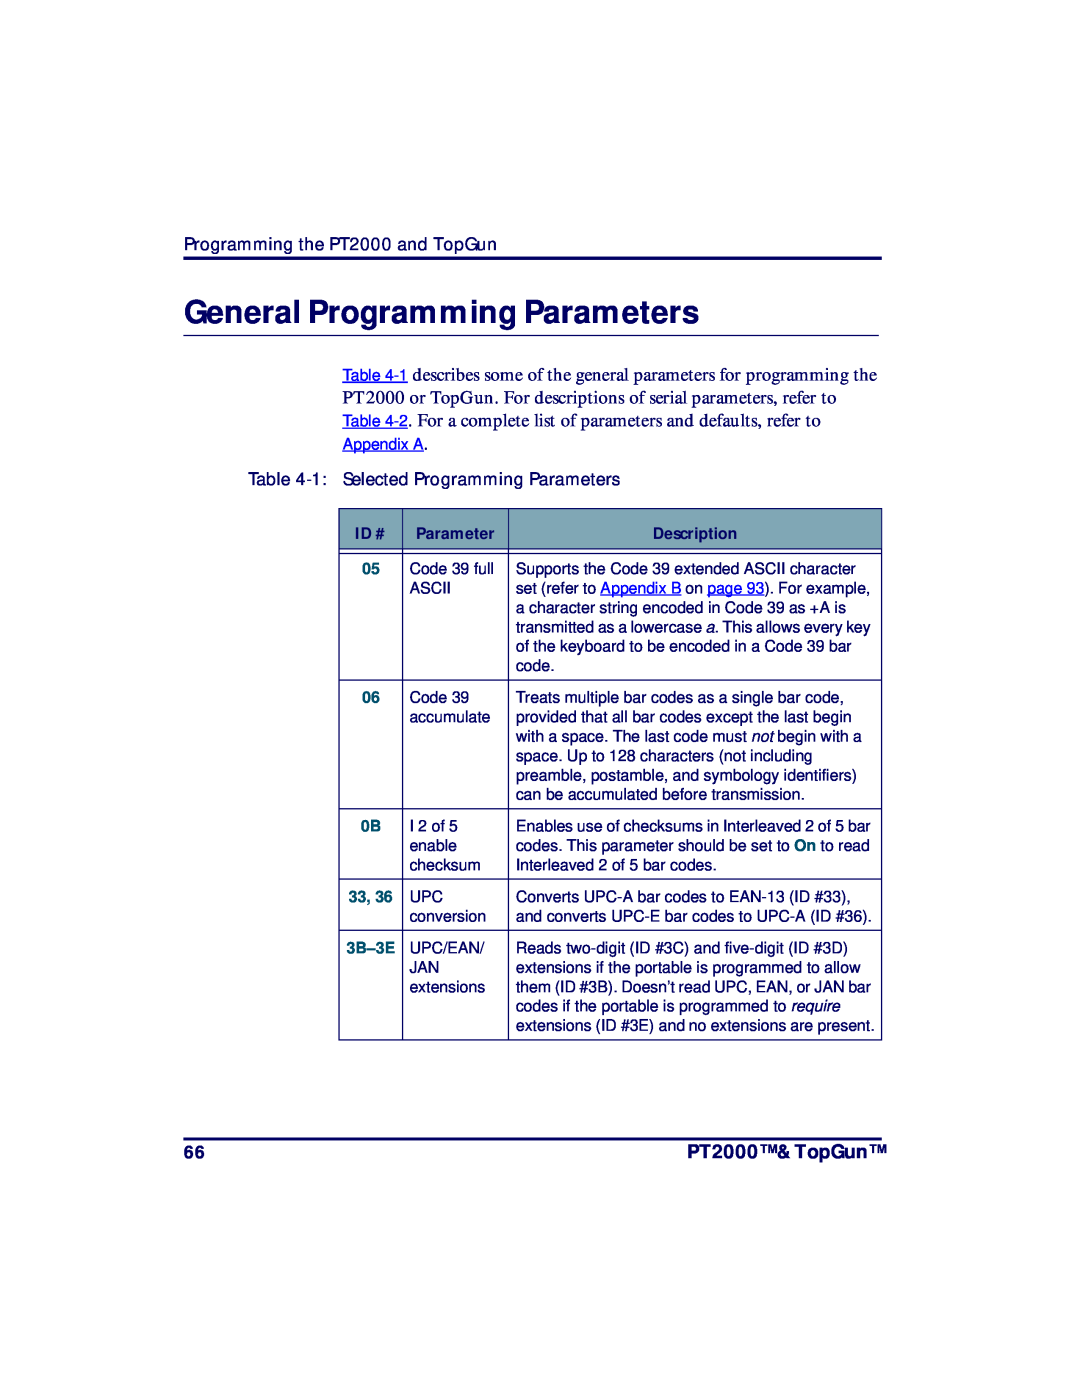 PSC manual General Programming Parameters, PT2000 & TopGun, Programming the PT2000 and TopGun, 3B-3E 